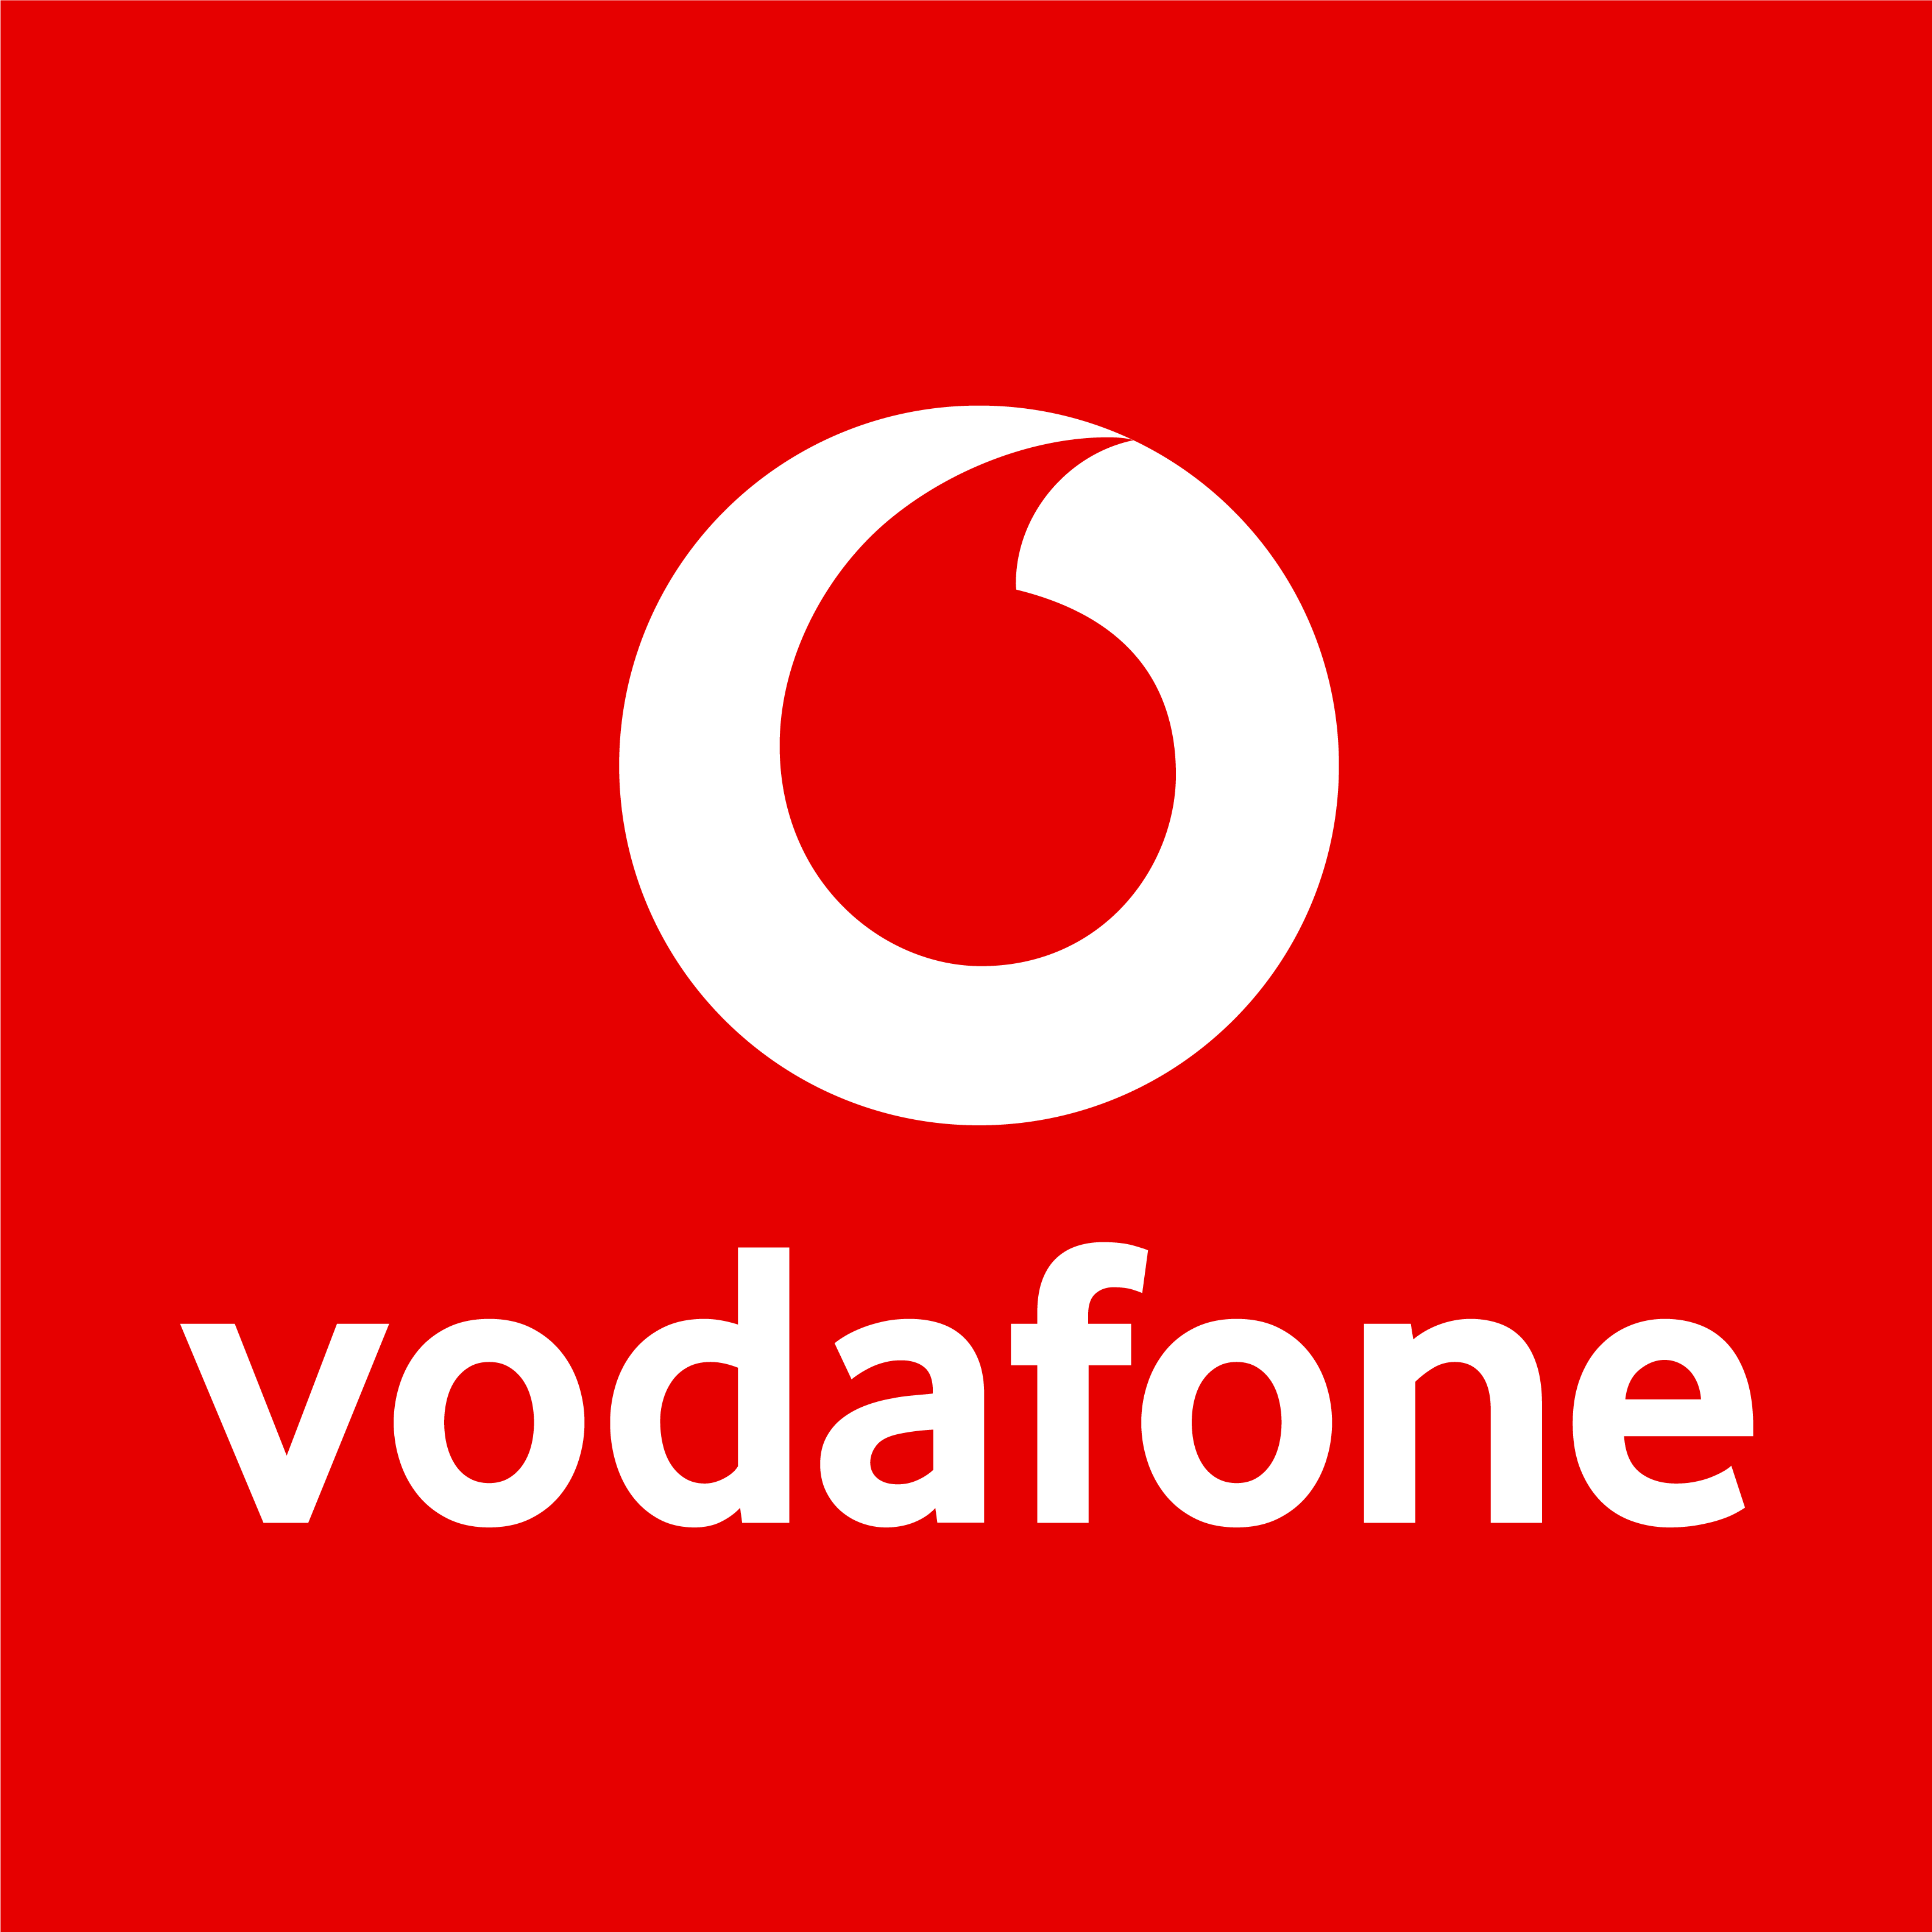 Vodafone Shop in Duisburg - Logo